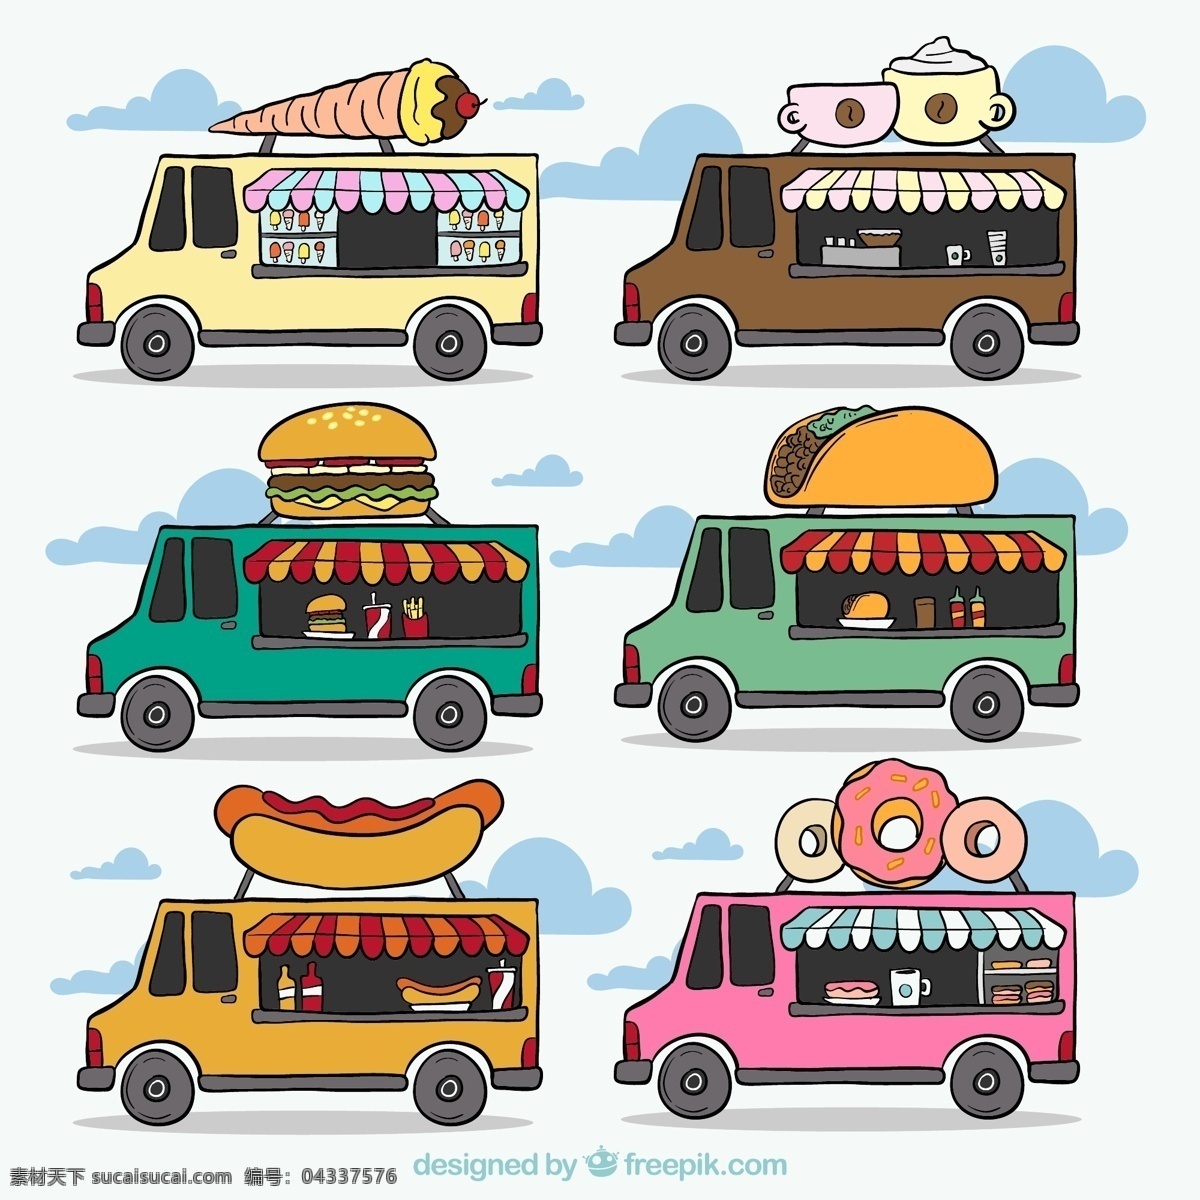 卡通美食车 冰淋淇 卡通 美食车 汉堡